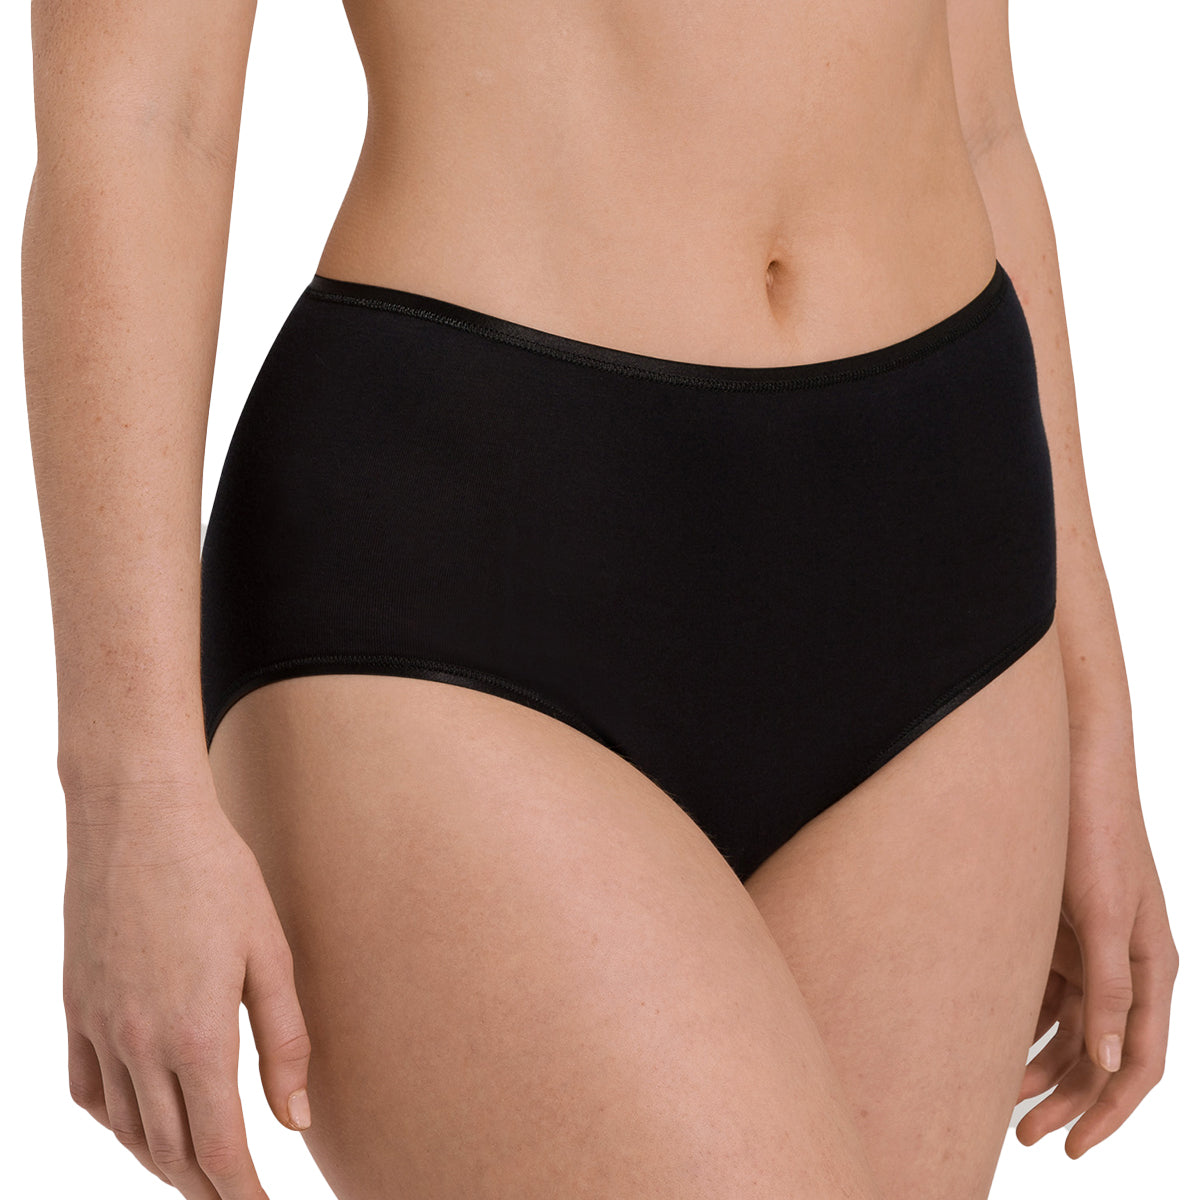 Fashion Seamless Women's Panties Cotton Underwear Soft @ Best Price Online